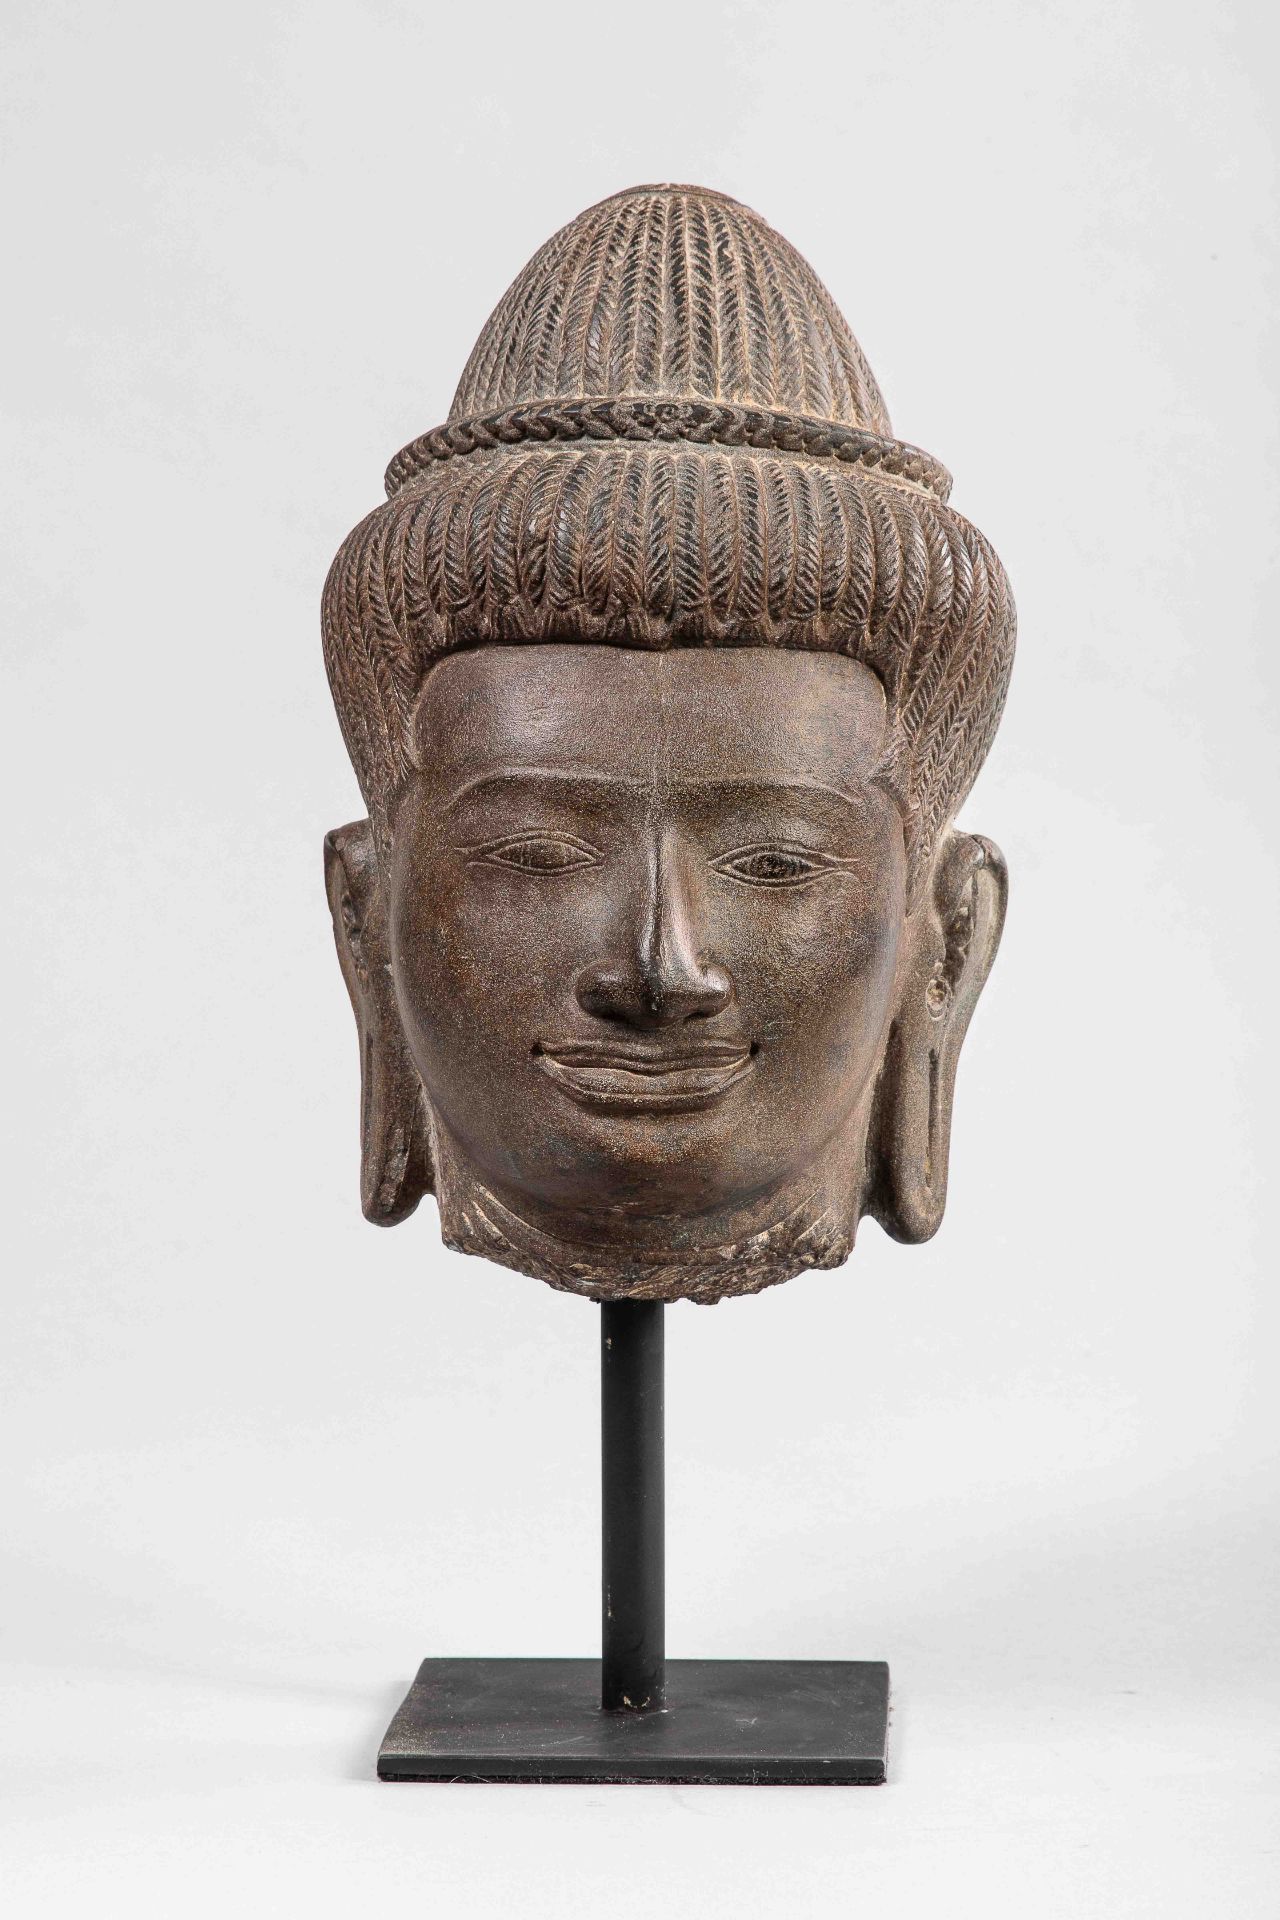 Tête de Shiva à l'expression mystique et souriante qui caractérise les visages du site du Bayon Le